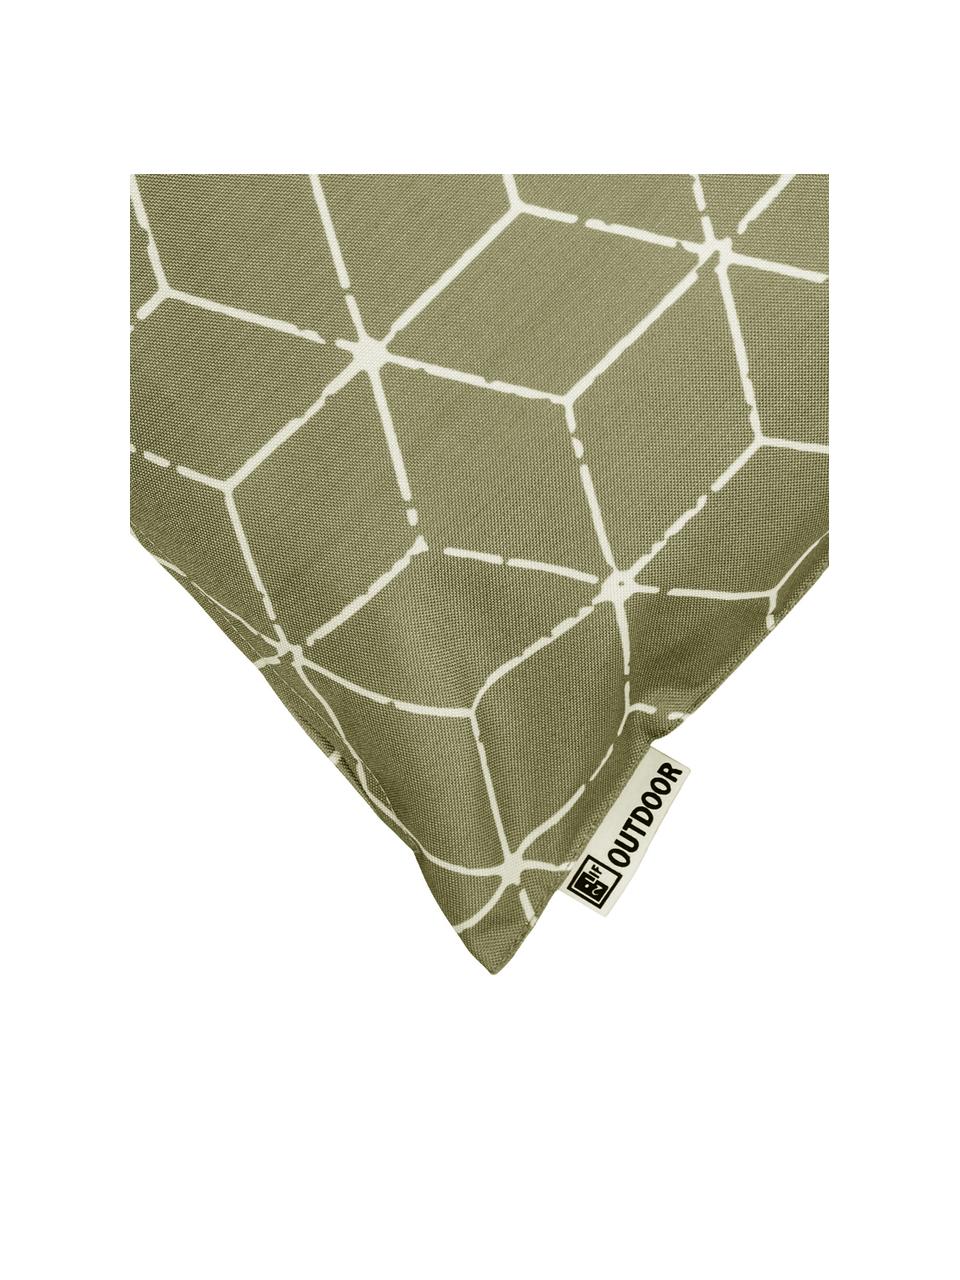 Outdoor kussen Cube met grafisch patroon in groen/wit, met vulling, 100% polyester, Groen, wit, 30 x 50 cm